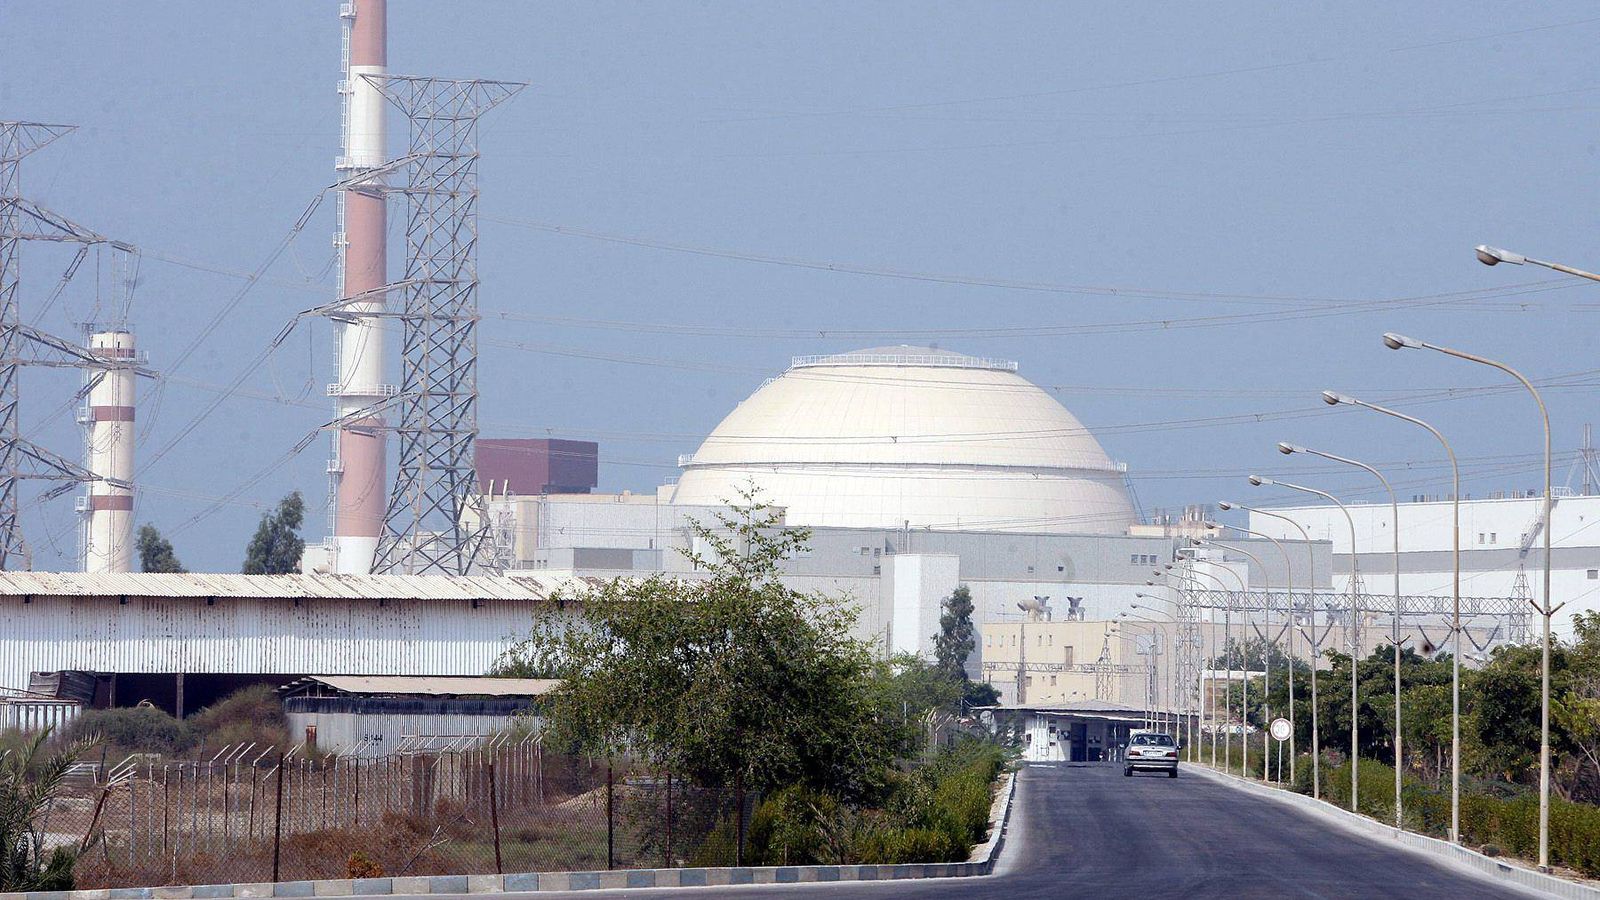 La central nuclear de Bushehr, en el sur de Irán, construida por Rosatom, a compañía estatal nuclear rusa que controla la mayor parte de la producción de uranio enriquecido. (EFE/Abedin Taherkenareh)